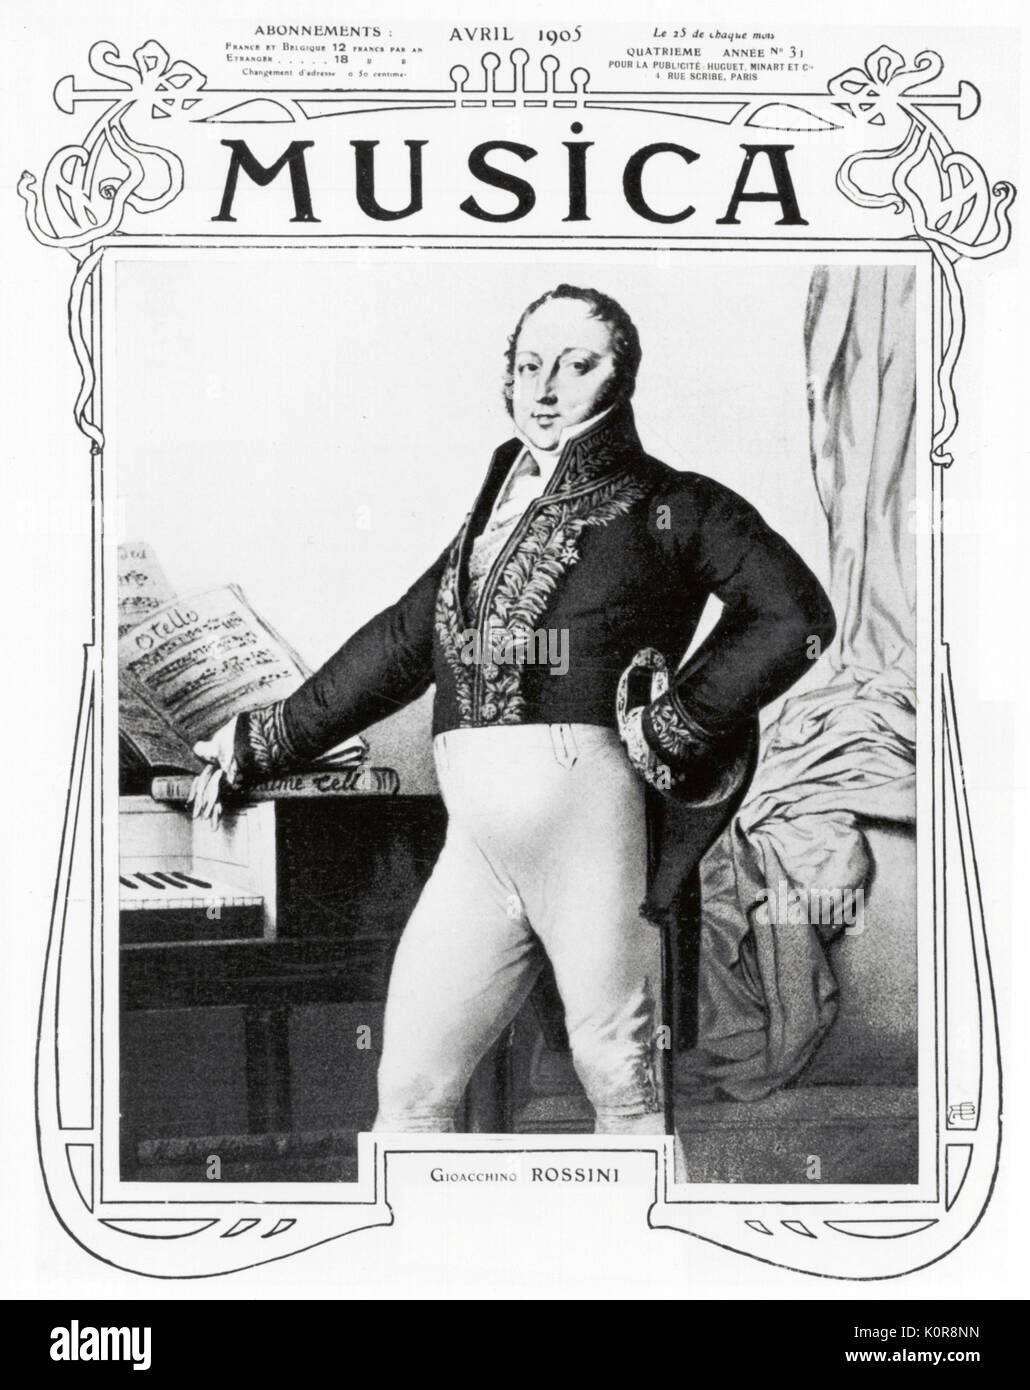 Gioacchino Rossini A. in das Kostüm der Französischen Akademie. Italienischer Komponist auf der Abdeckung der Musica. Italienischer Komponist, 29. Februar 1792 - 13. November 1868. Stockfoto